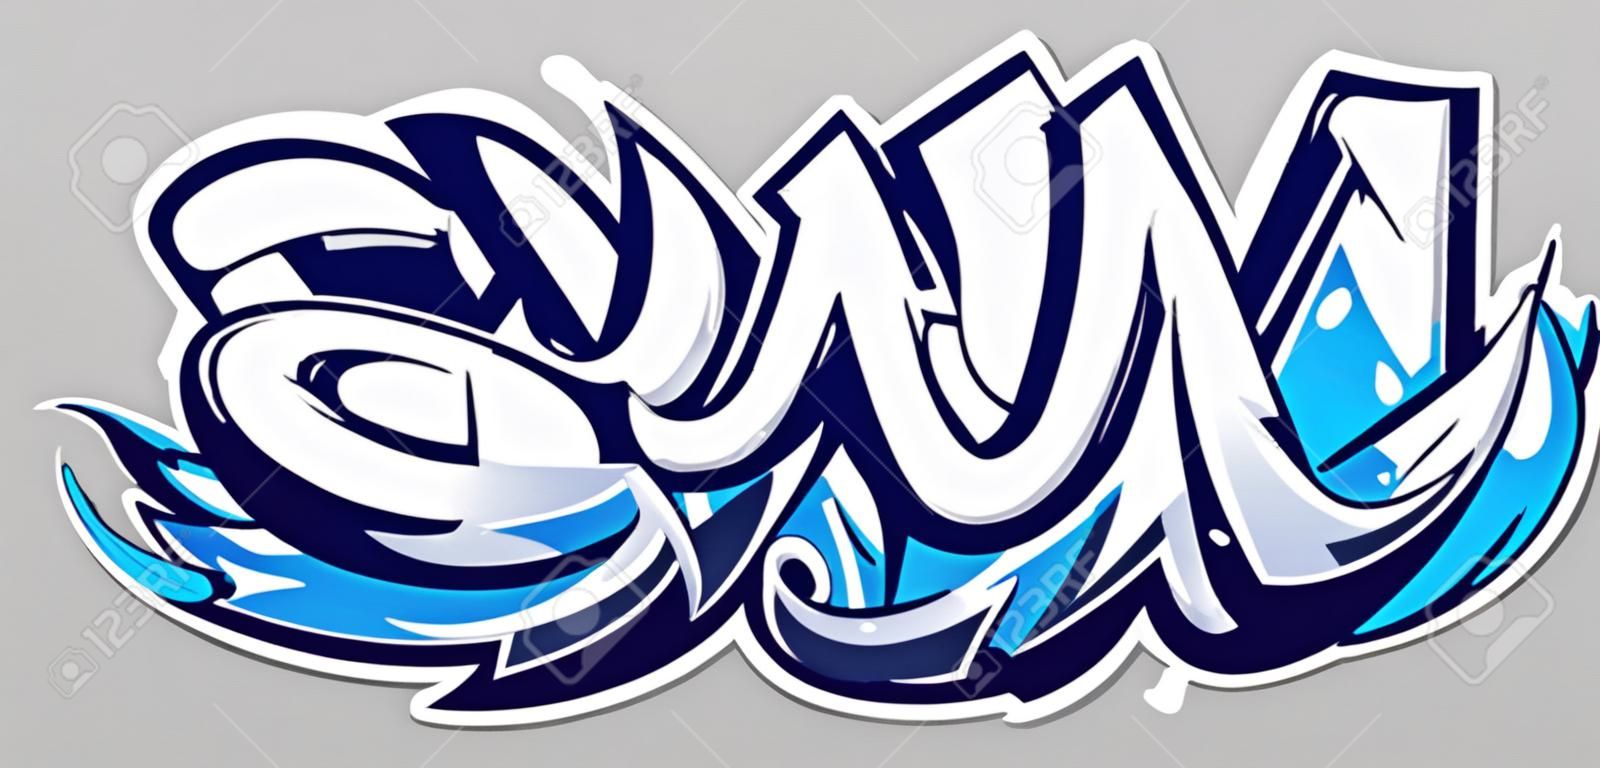 Big Up lettrage de vecteur de couleur bleue sur fond gris. Art du graffiti de style sauvage dynamique. Illustration abstraite de trois lettres dimensionnelles.